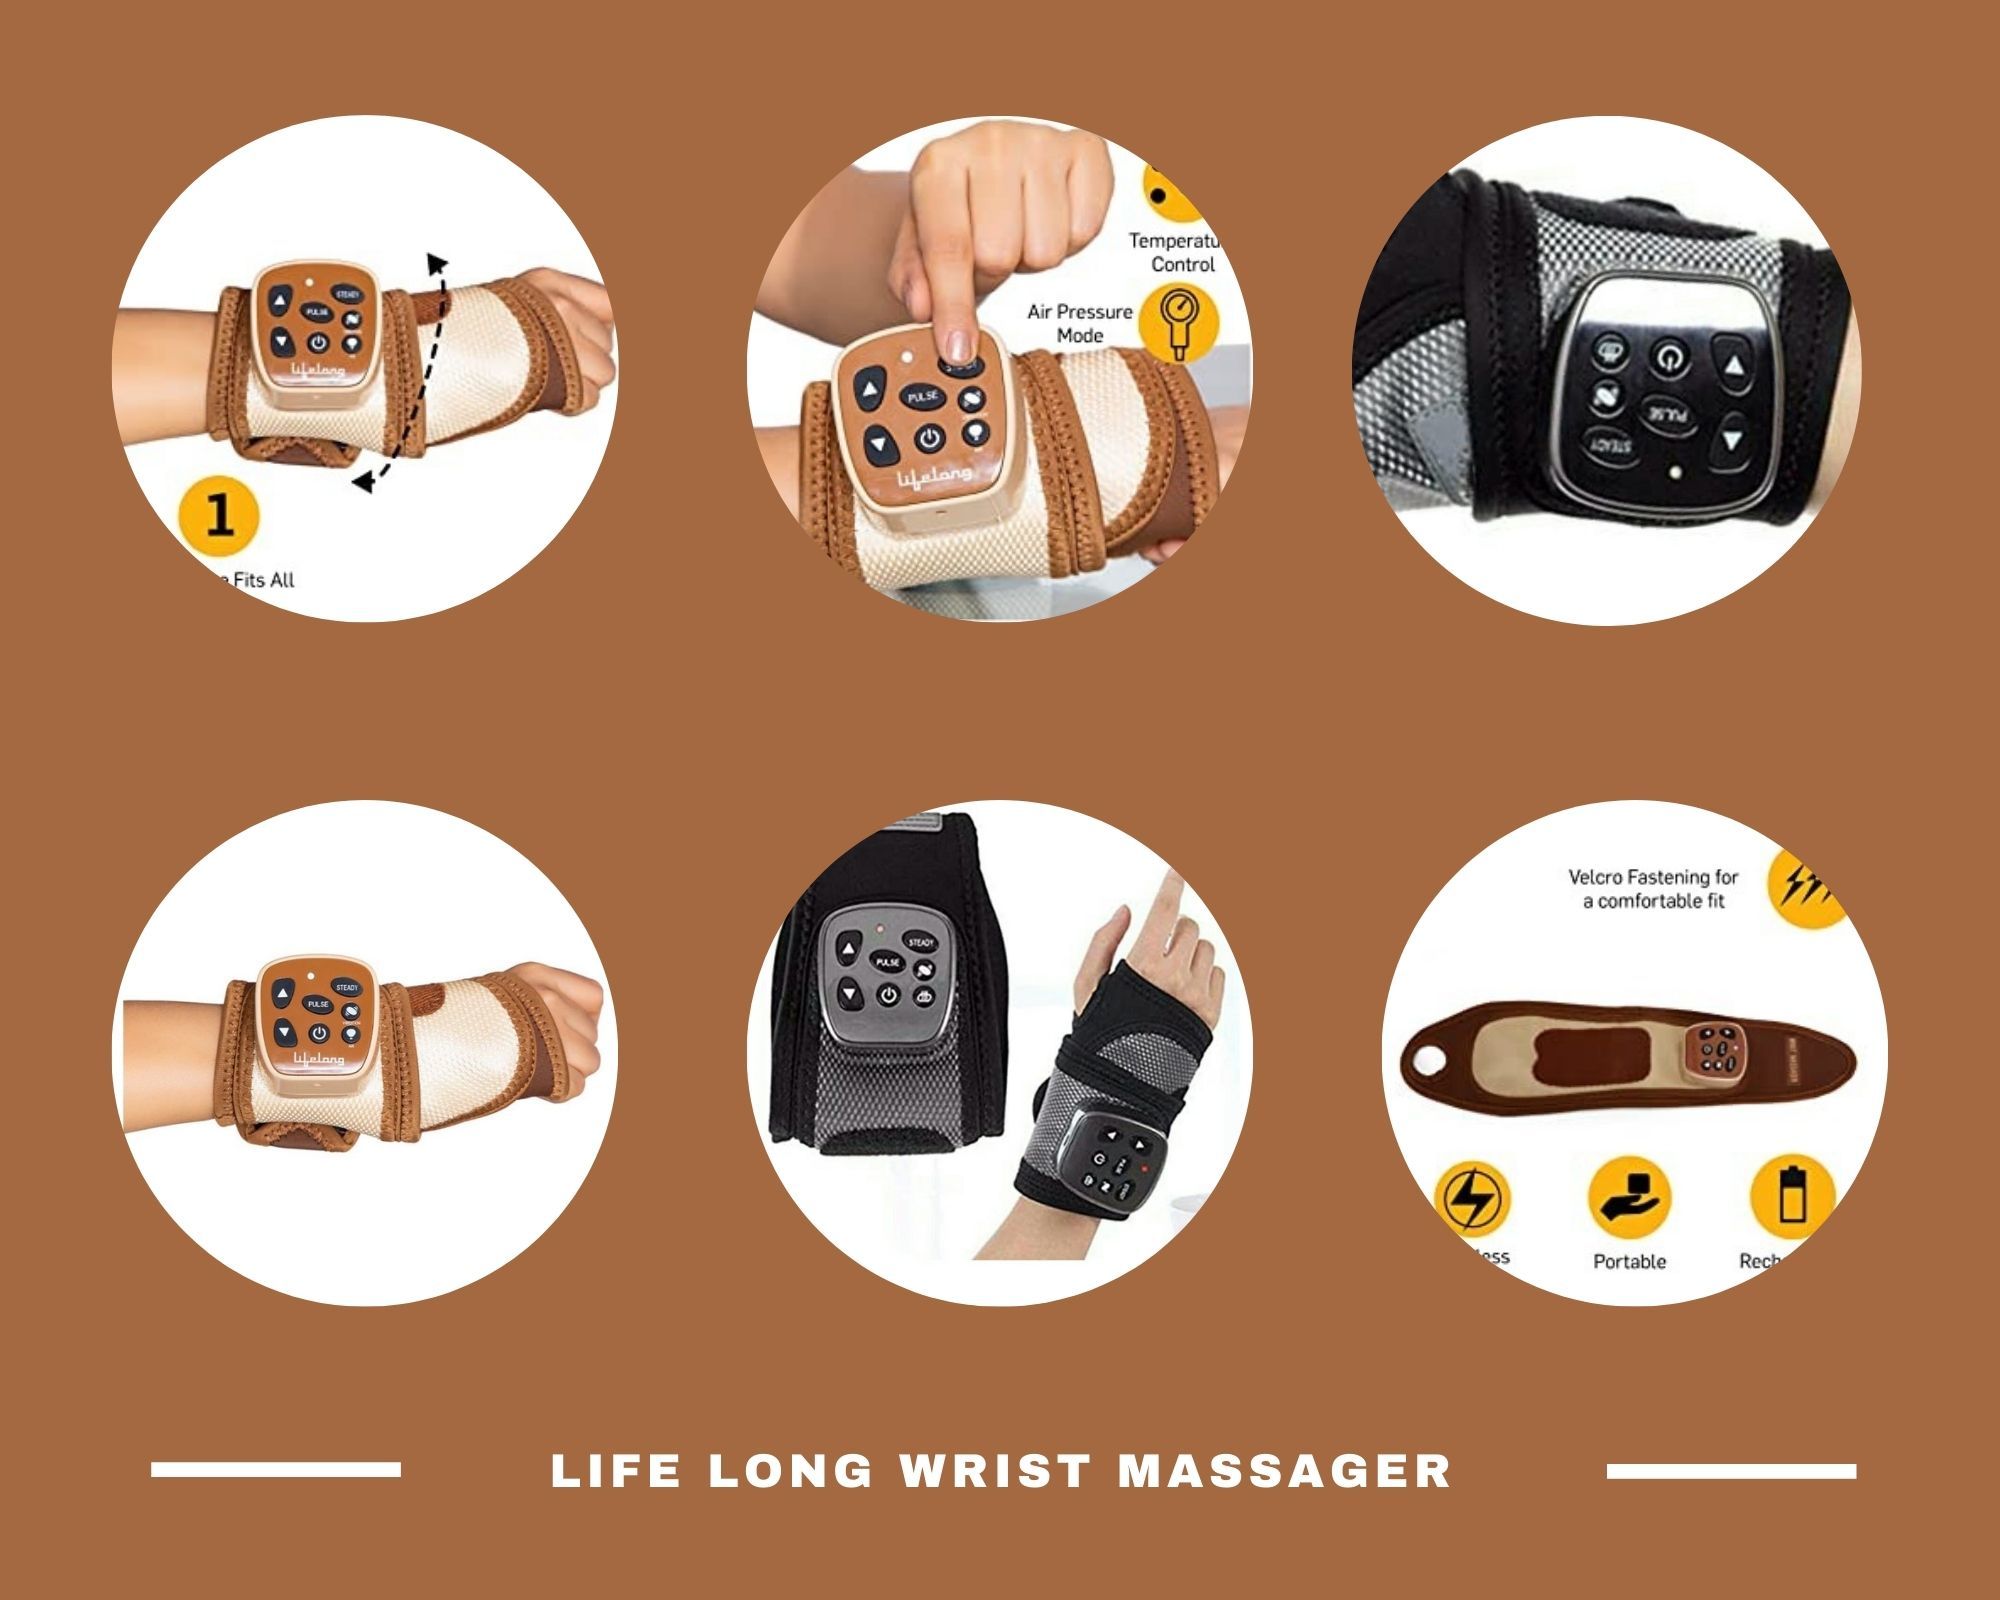 Lifelong rechargeable wrist massager